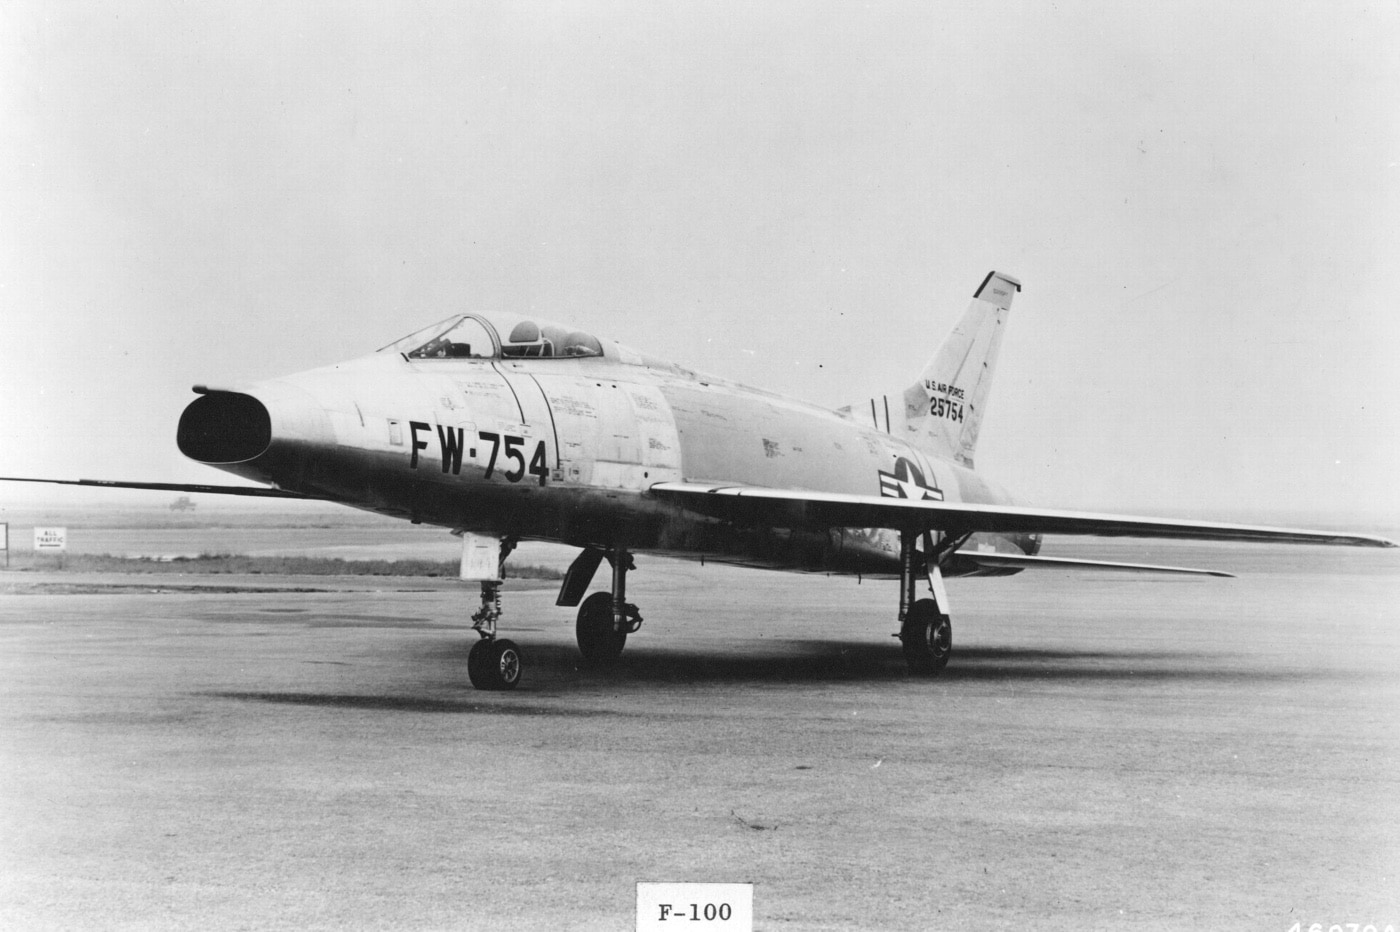 yf-100a super sabre fighter plane